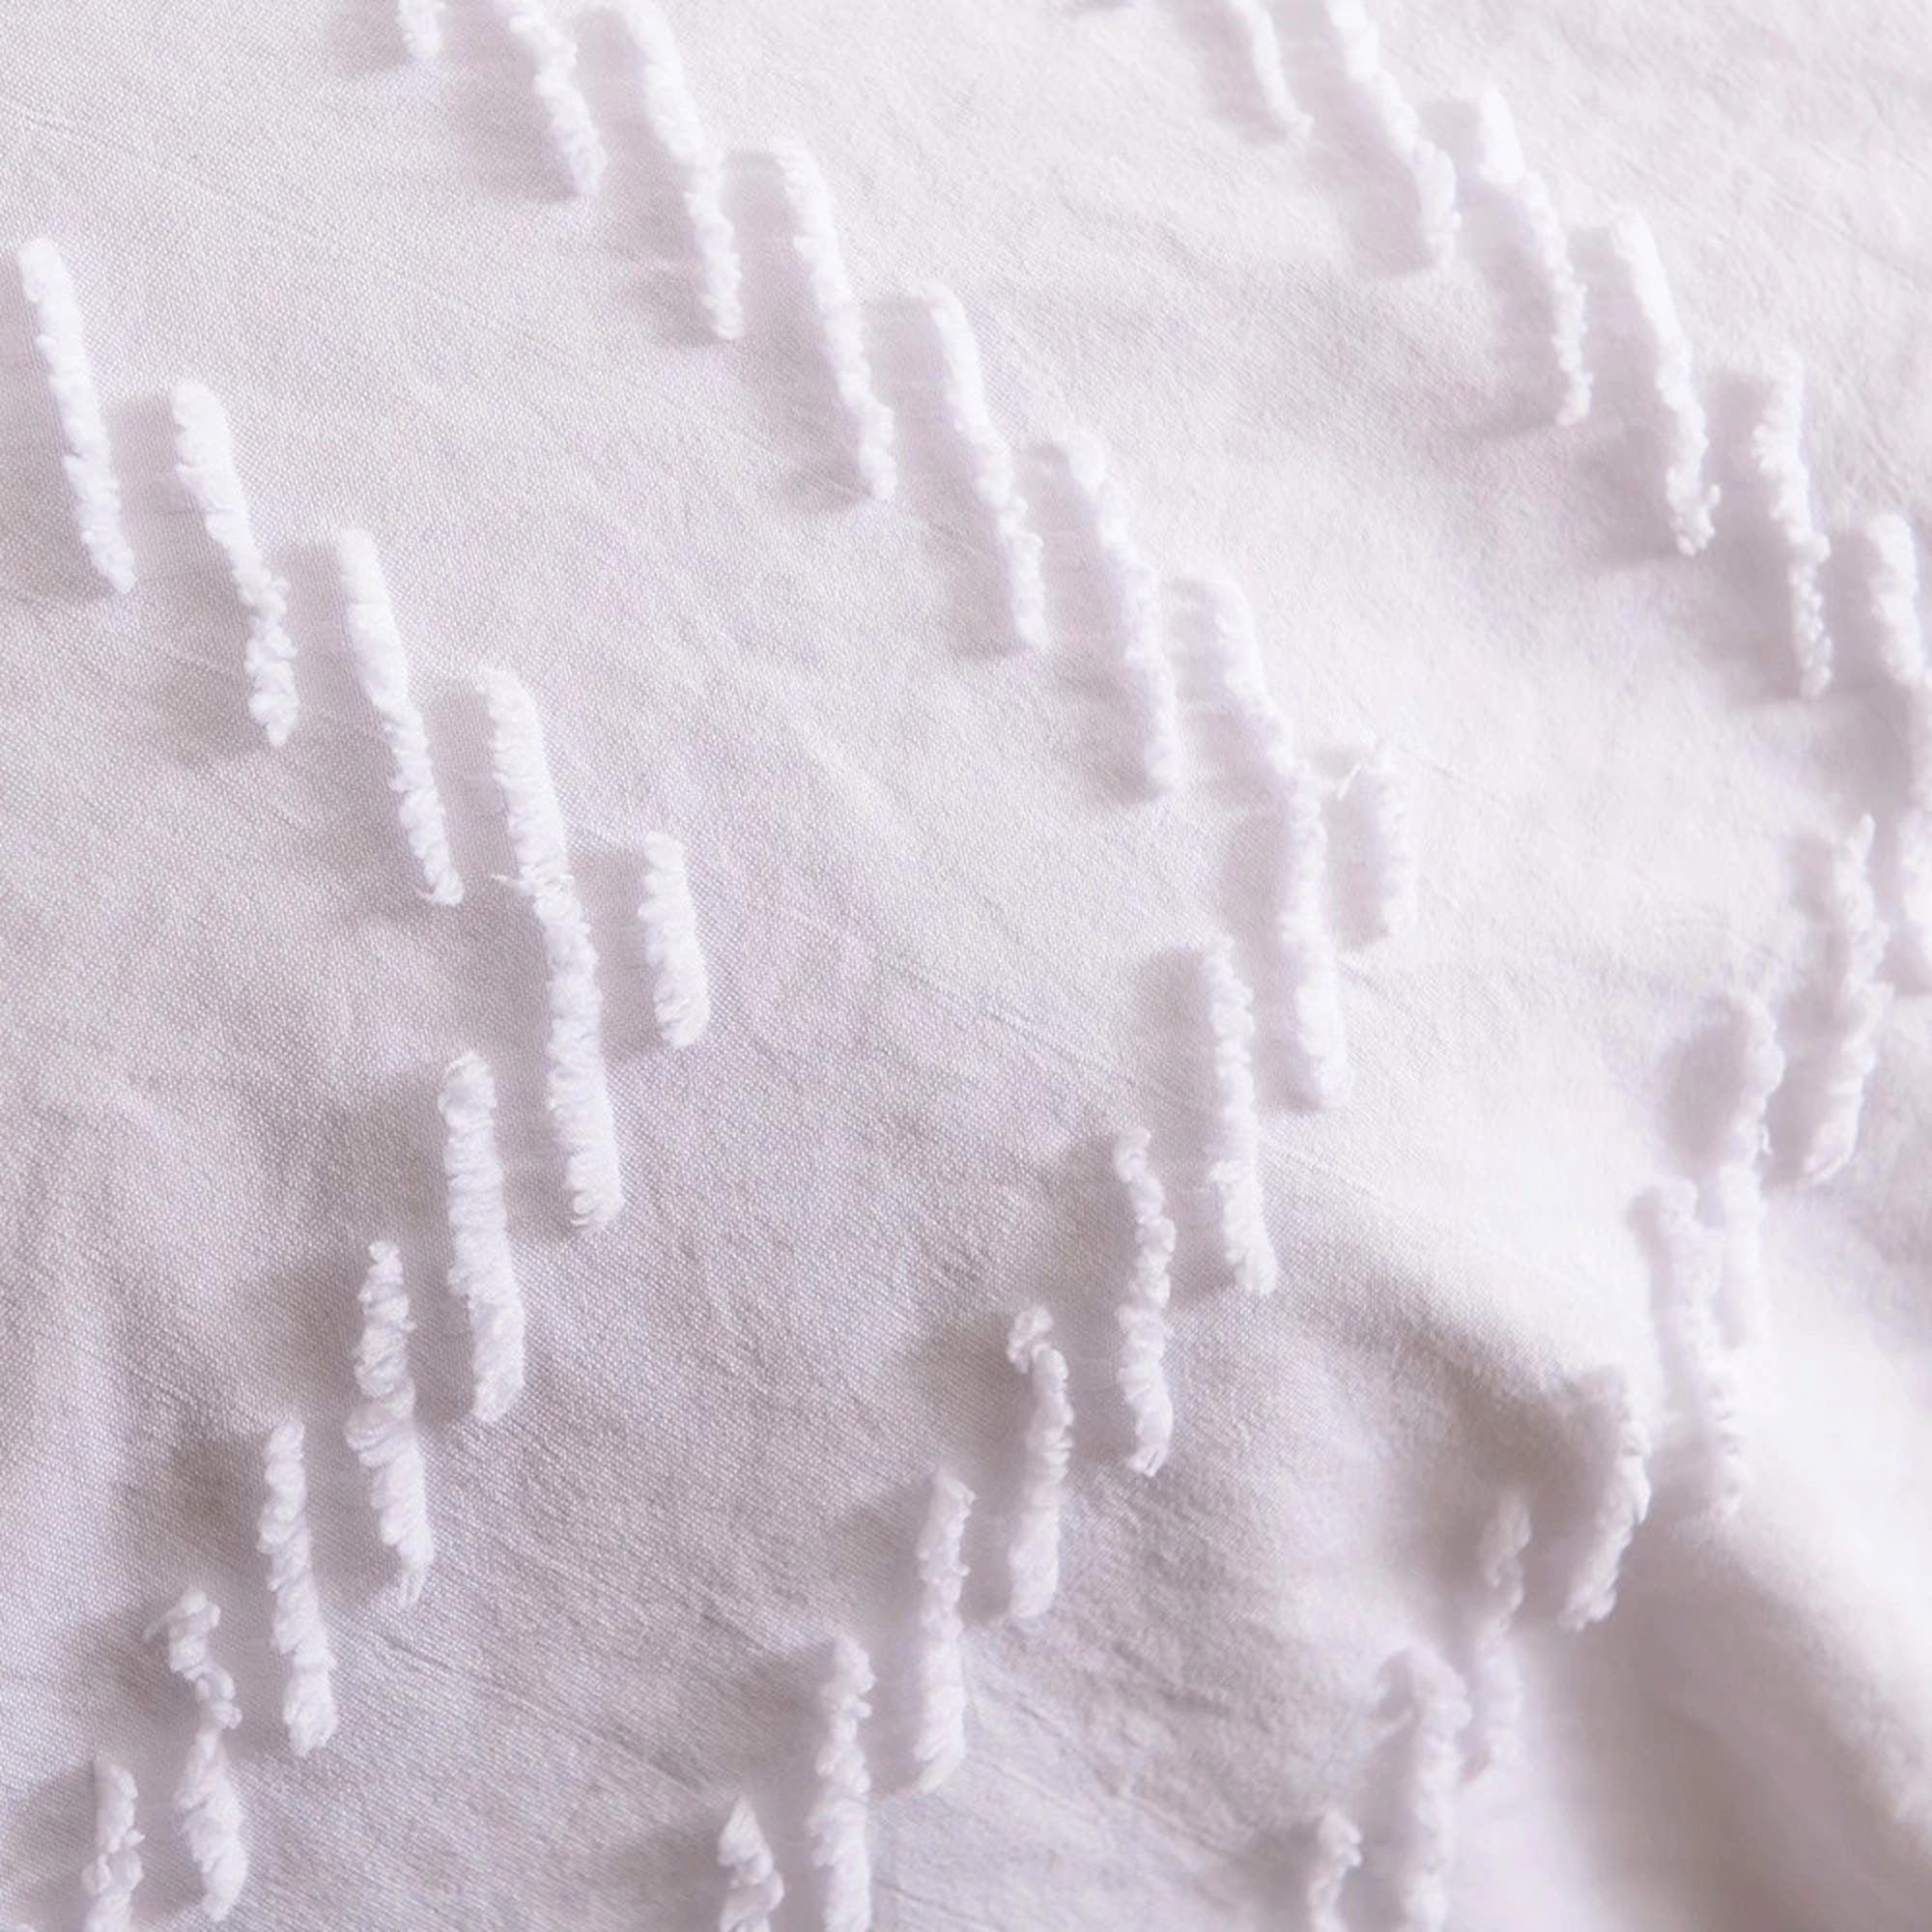 daintyduvet Minimalist Bedding, Tufted Duvet Cover Set, Pom Pom Chevron Chenille Quilt, Boho Bed Cover, Shabby Chic Bedding, Textured Duvet King Queen